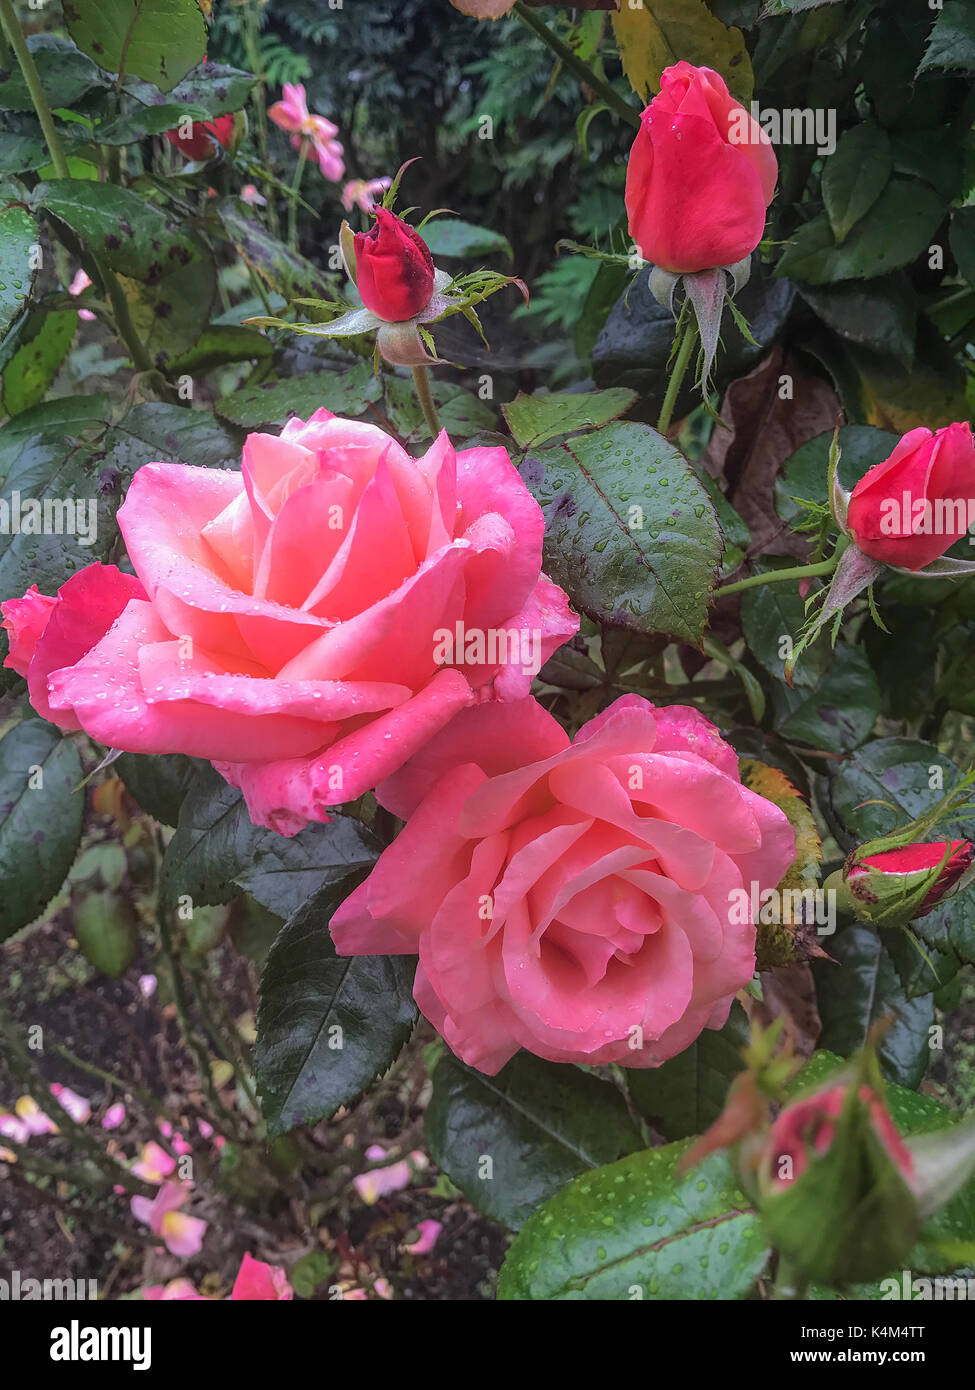 Beau jardin de fleurs de roses roses fleurs de bush avec gouttes de pluie Banque D'Images